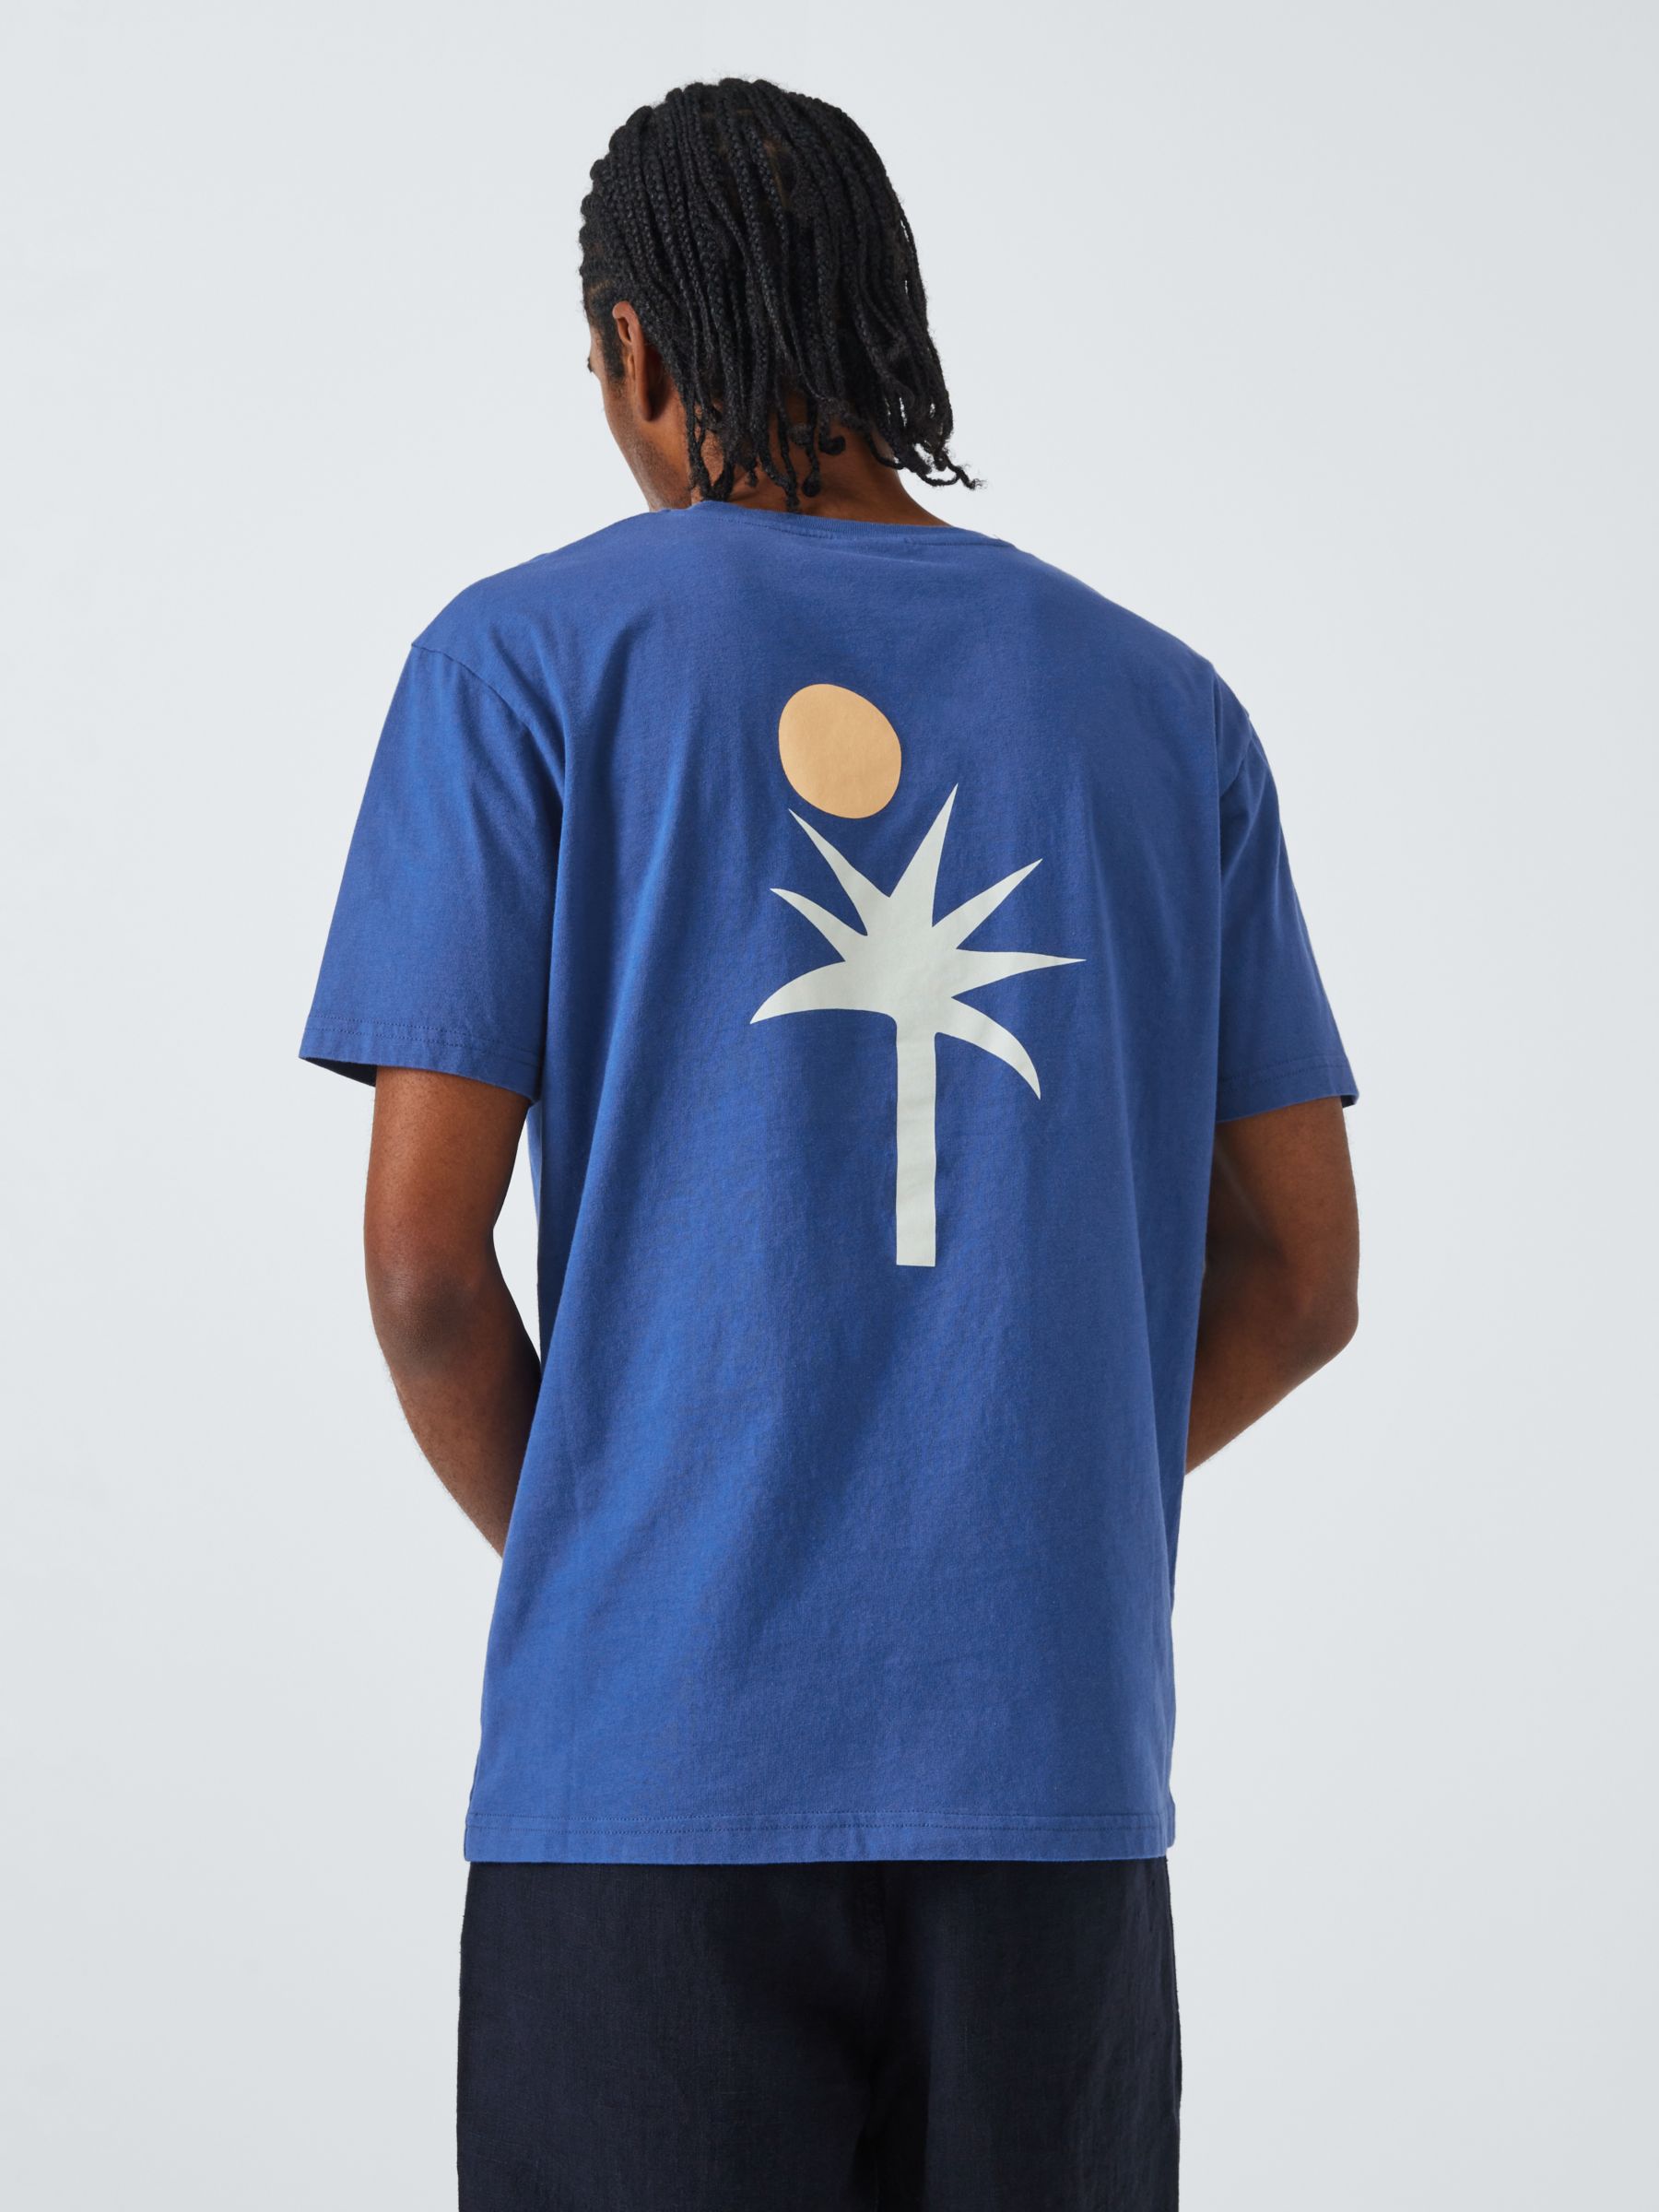 La Paz Print T-Shirt, Palm Blue, S